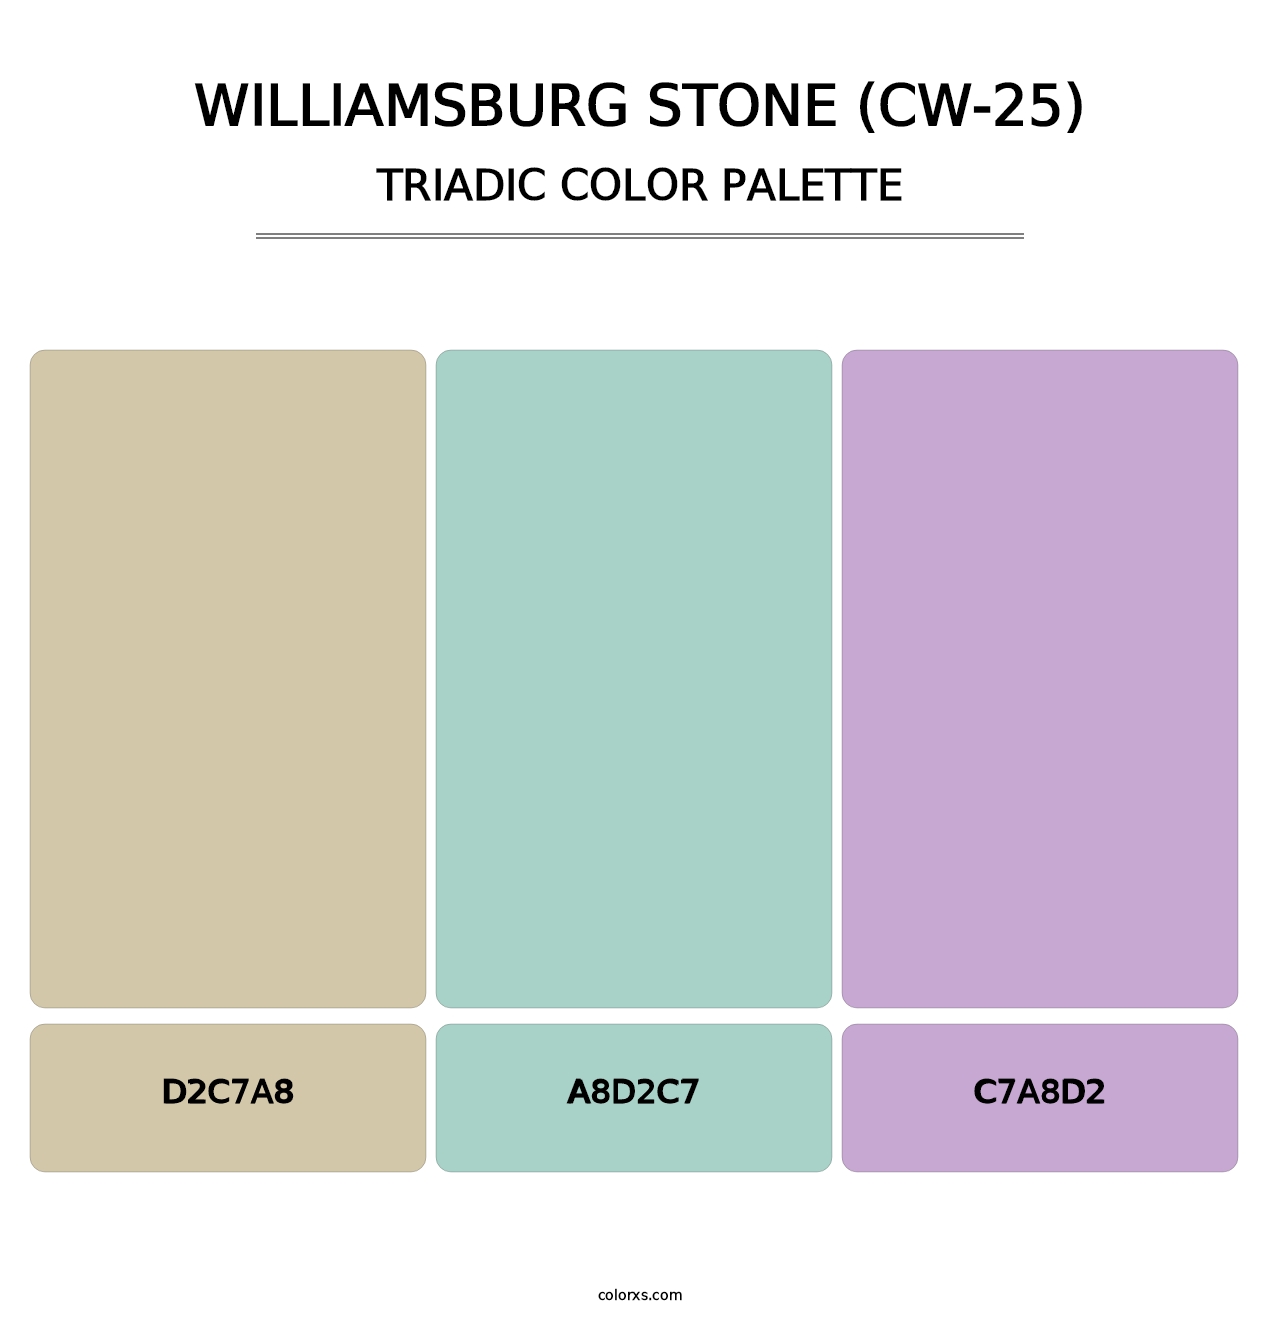 Williamsburg Stone (CW-25) - Triadic Color Palette